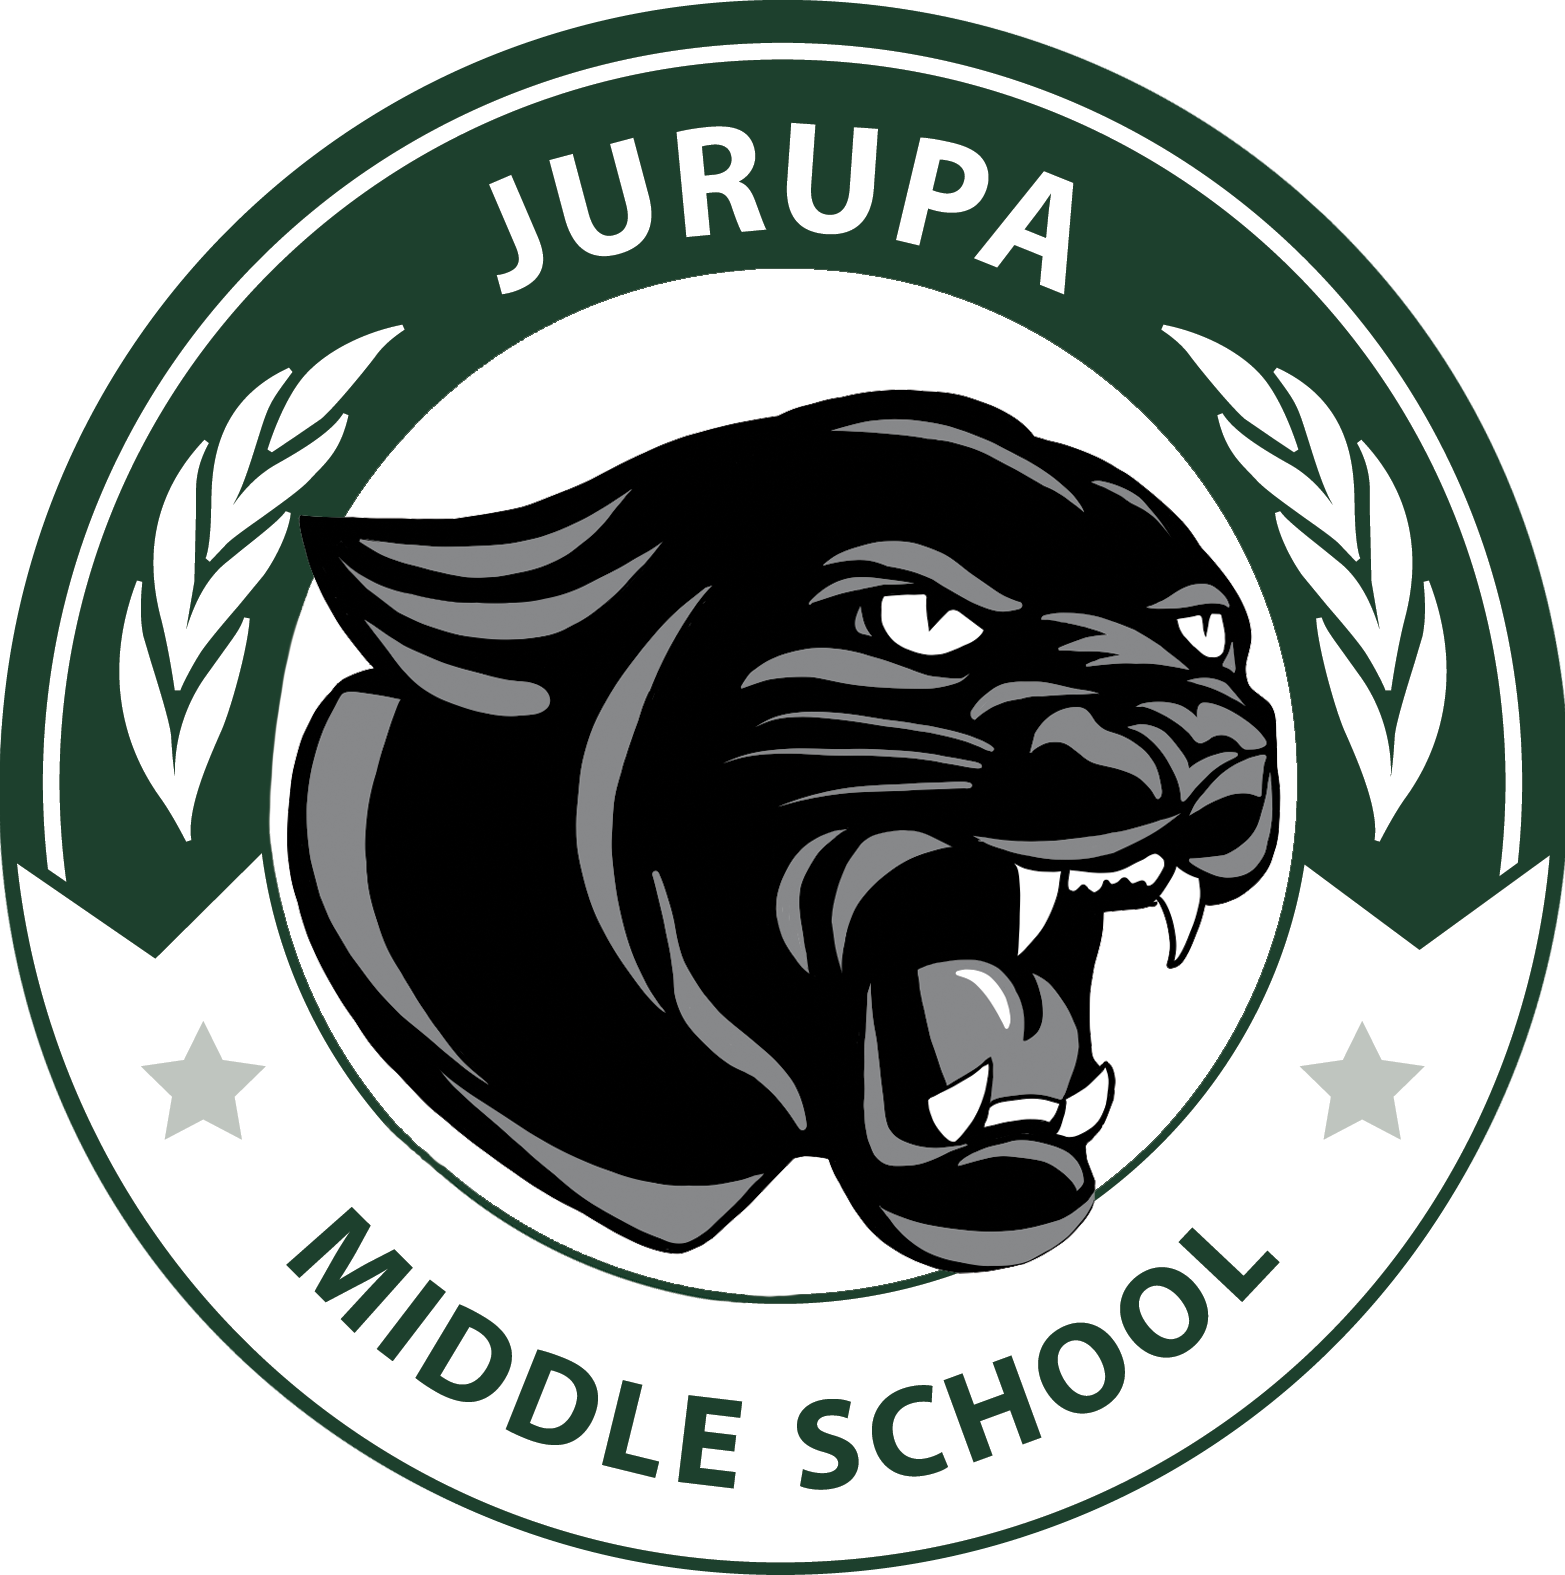 Jurupa Middle School